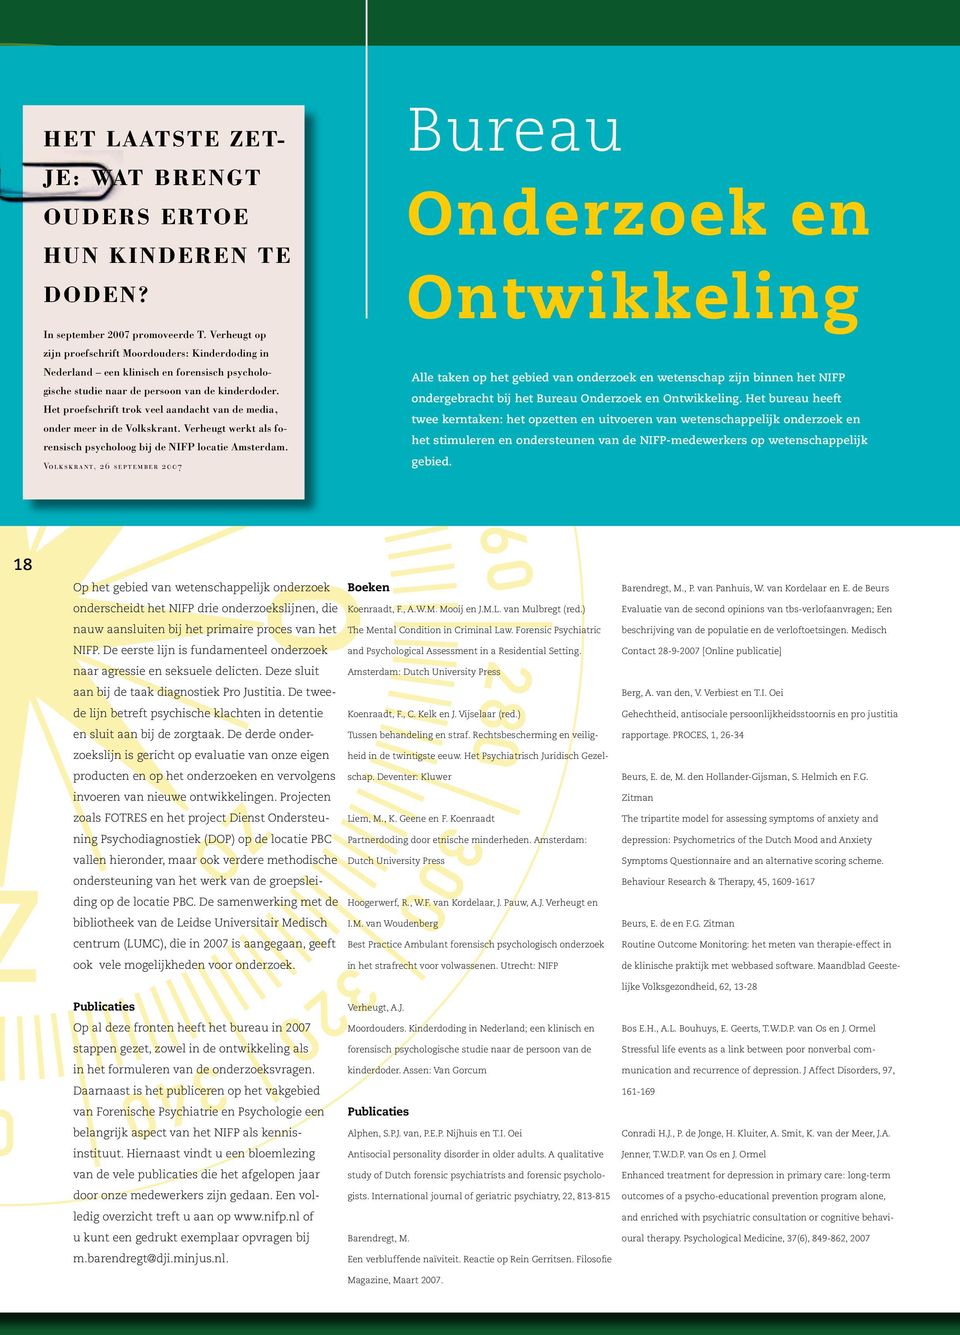 Het proefschrift trok veel aandacht van de media, onder meer in de Volkskrant. Verheugt werkt als forensisch psycholoog bij de NIFP locatie Amsterdam.